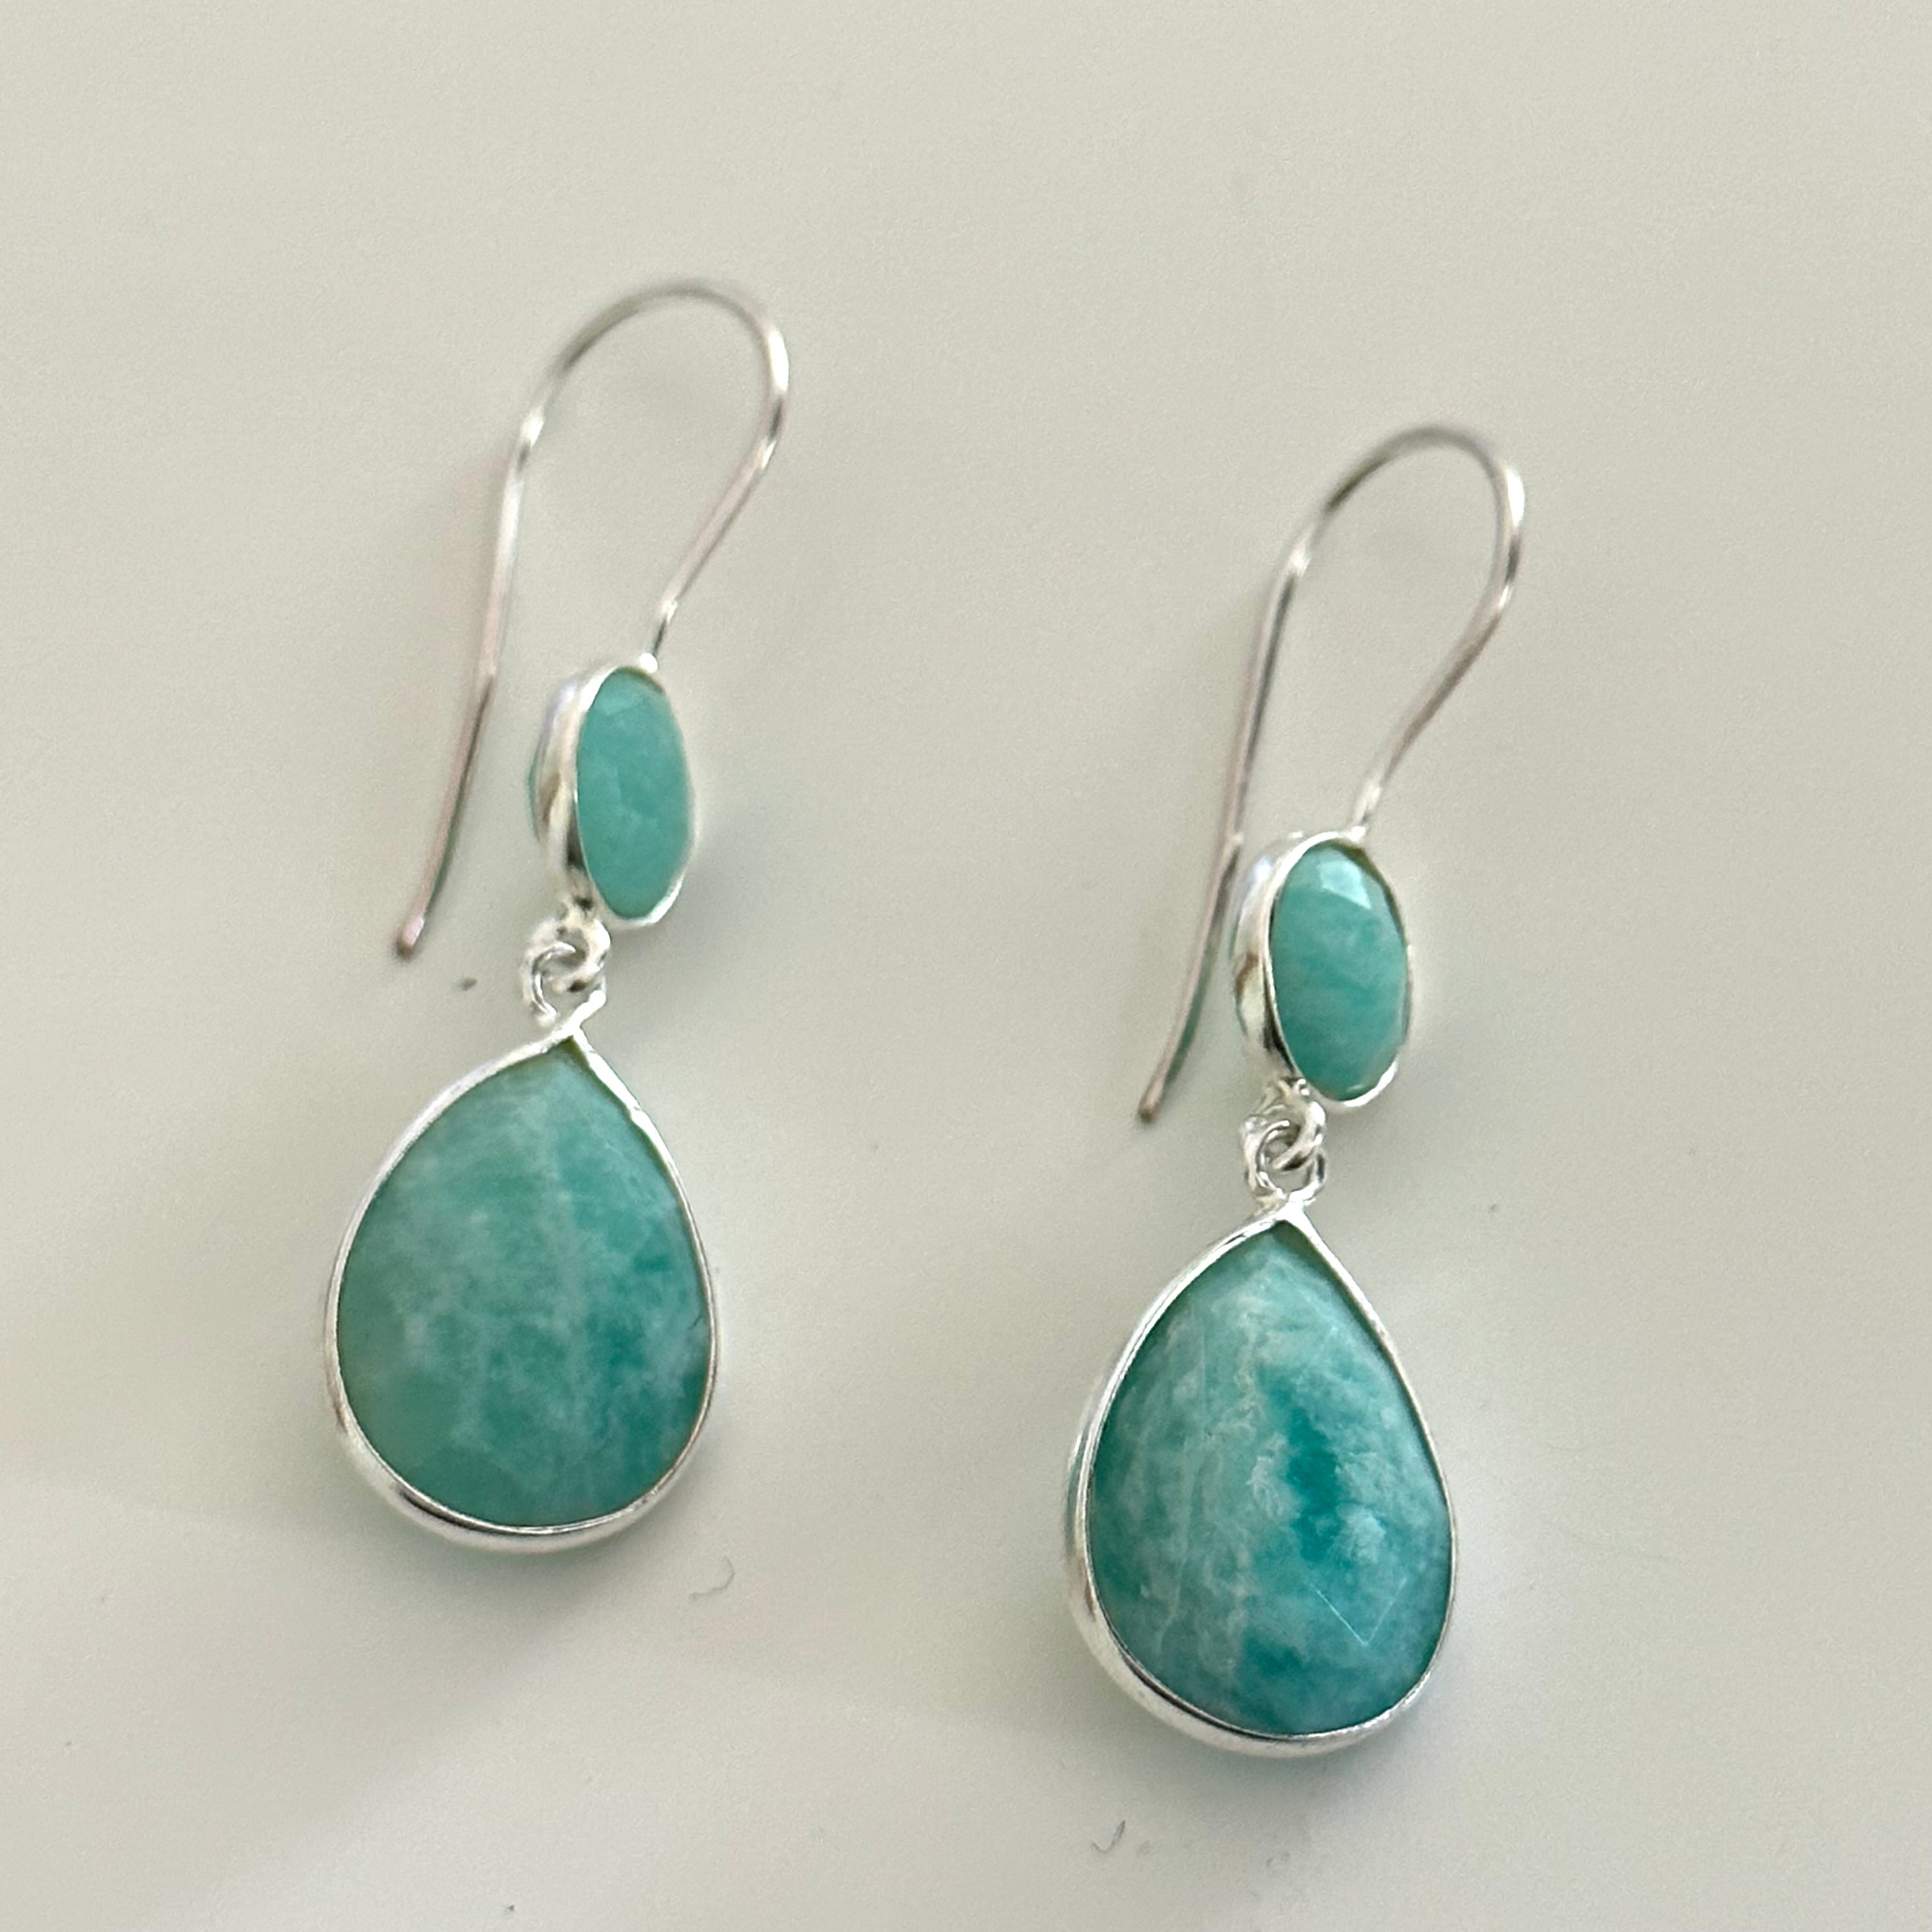 Amazonite Gemstone Two Stone Earrings in Sterling Silver - Teardrop